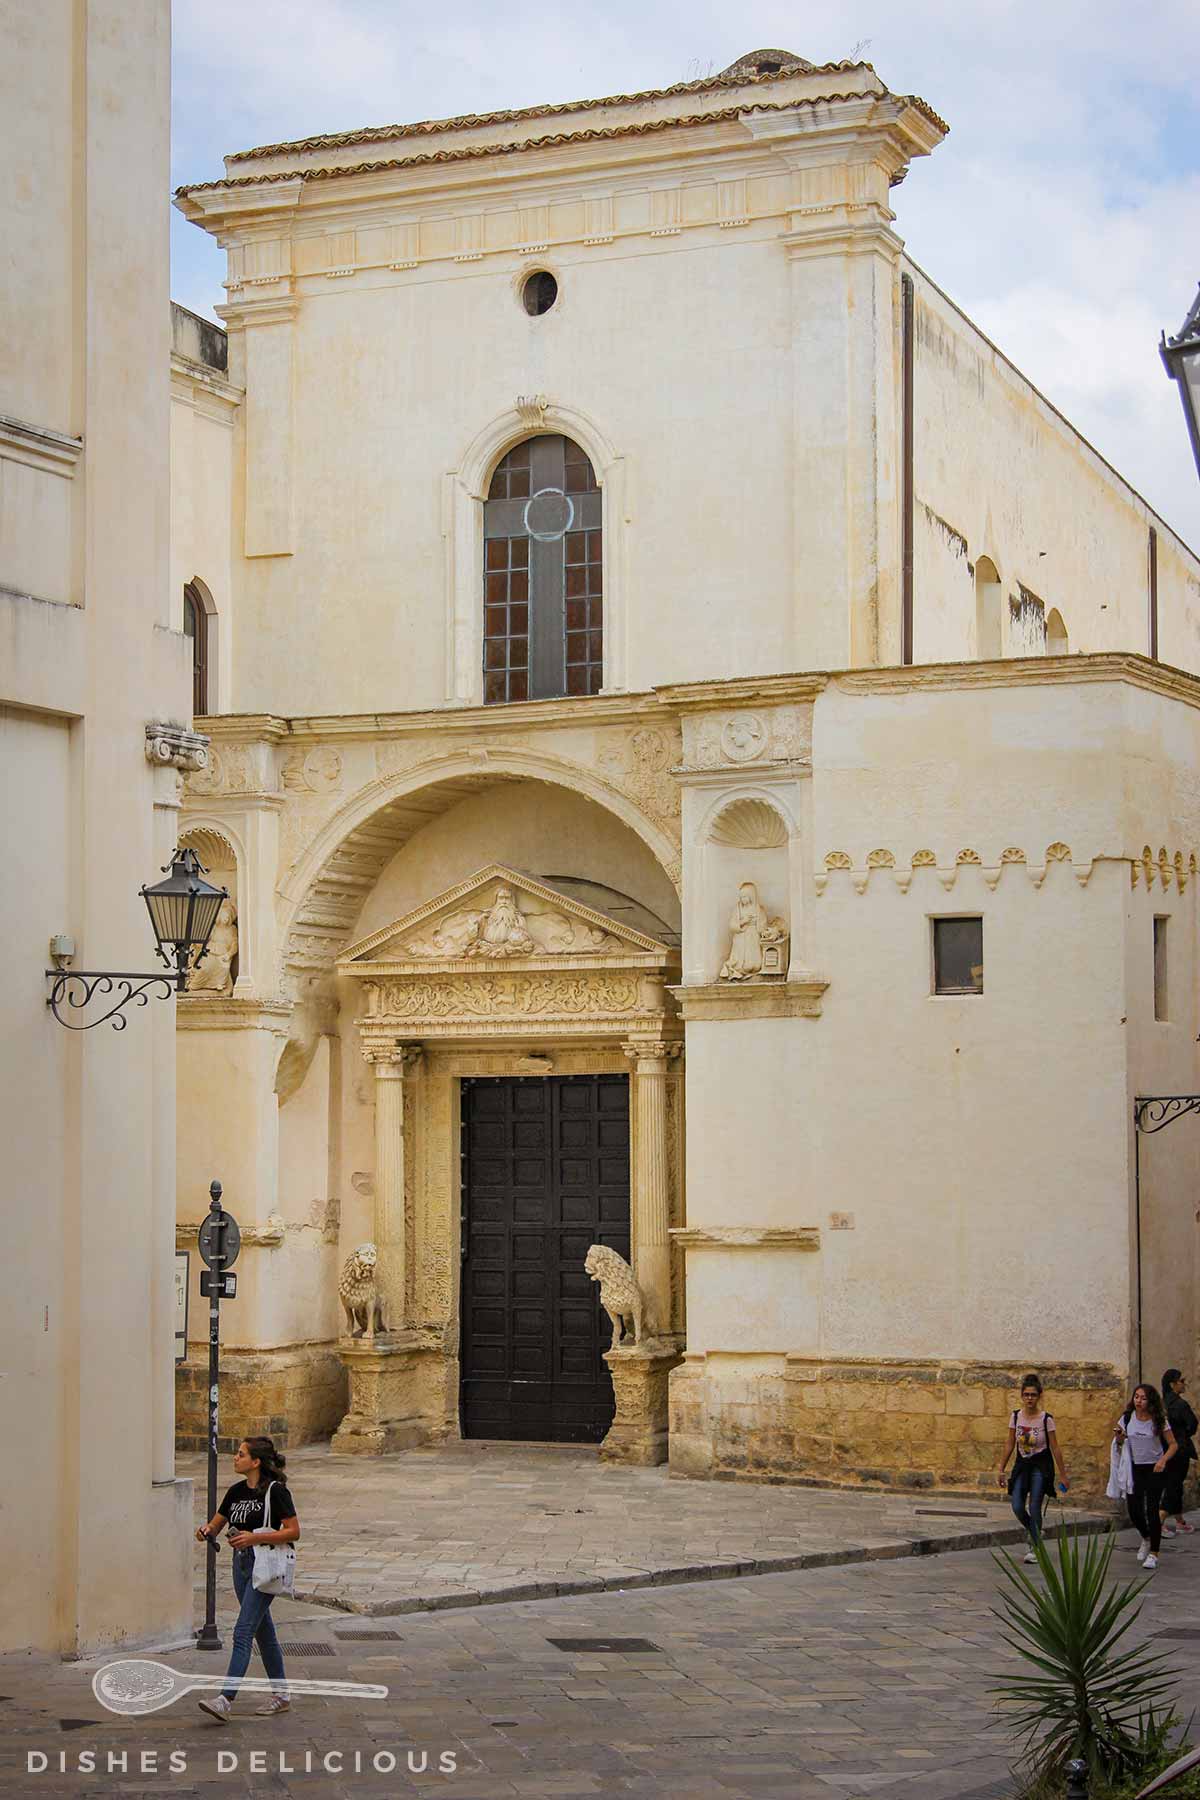 Unauffällige Karmelitenkirche, die aber mit einem schönen Portal besticht. Zwei Löwen aus Stein wachen neben dem Eingang.